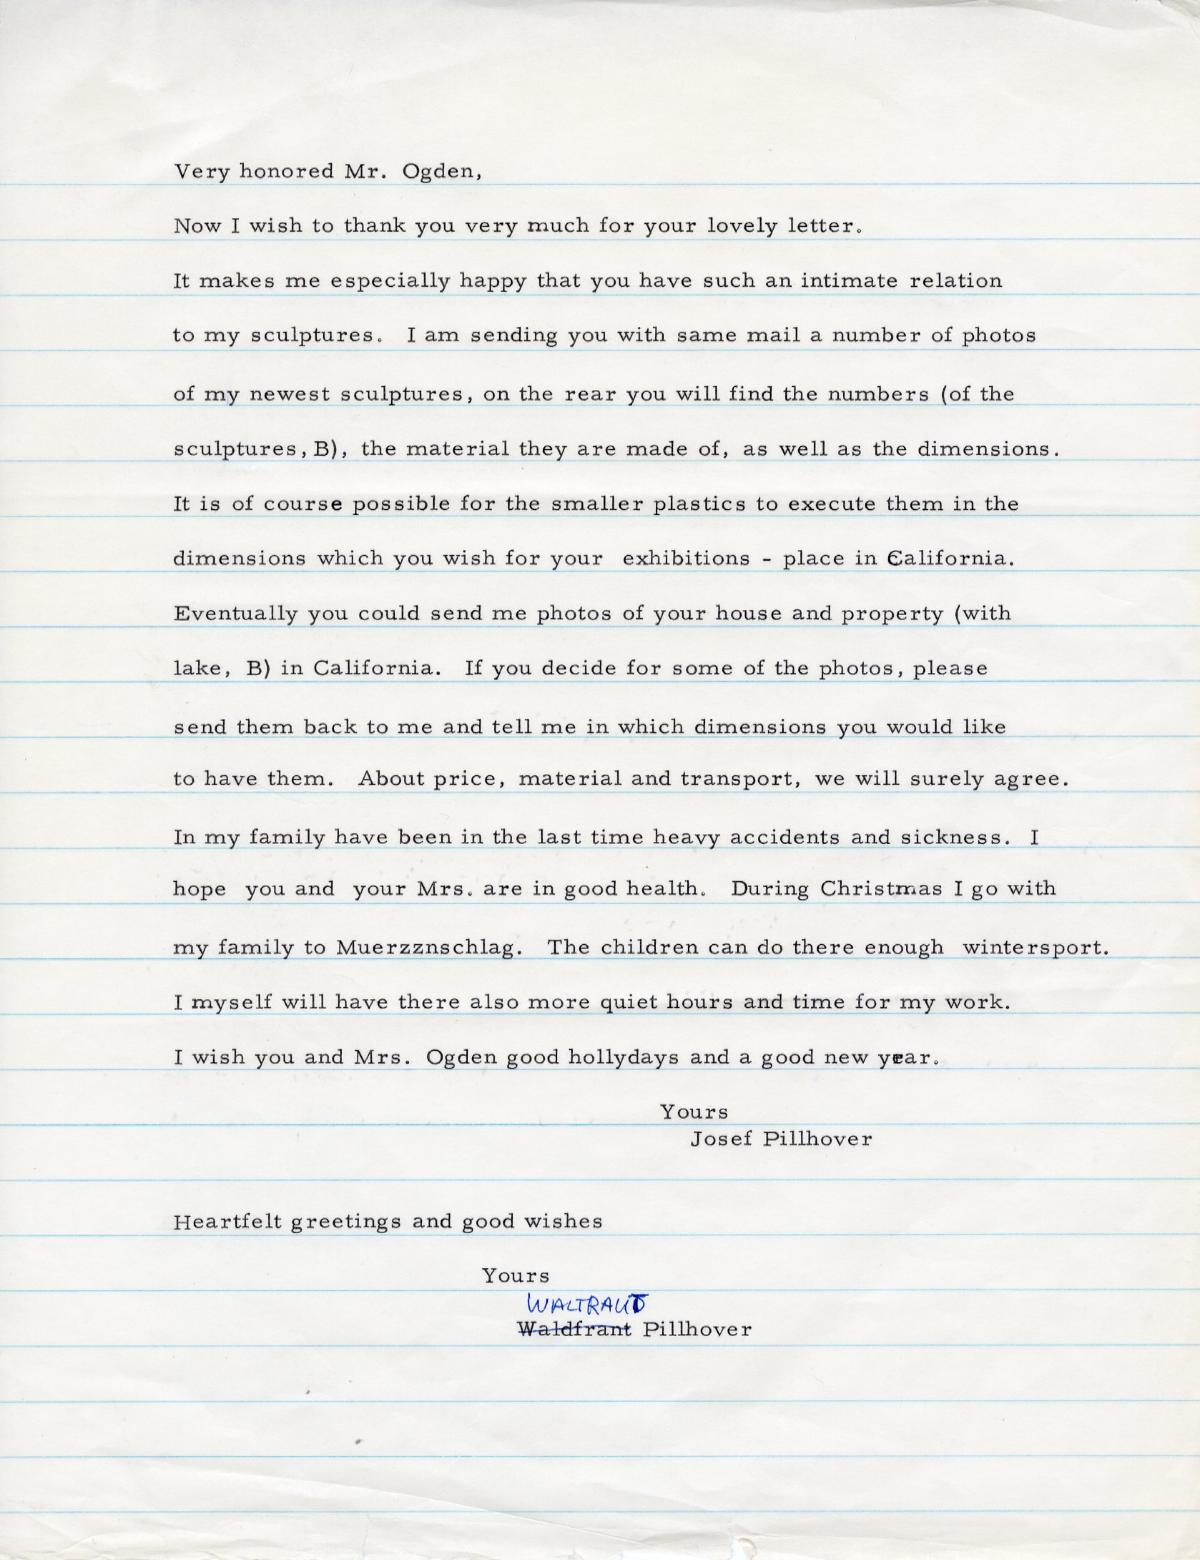 Josef Pillhofer Letter to Ralph E. Ogden, n.d.